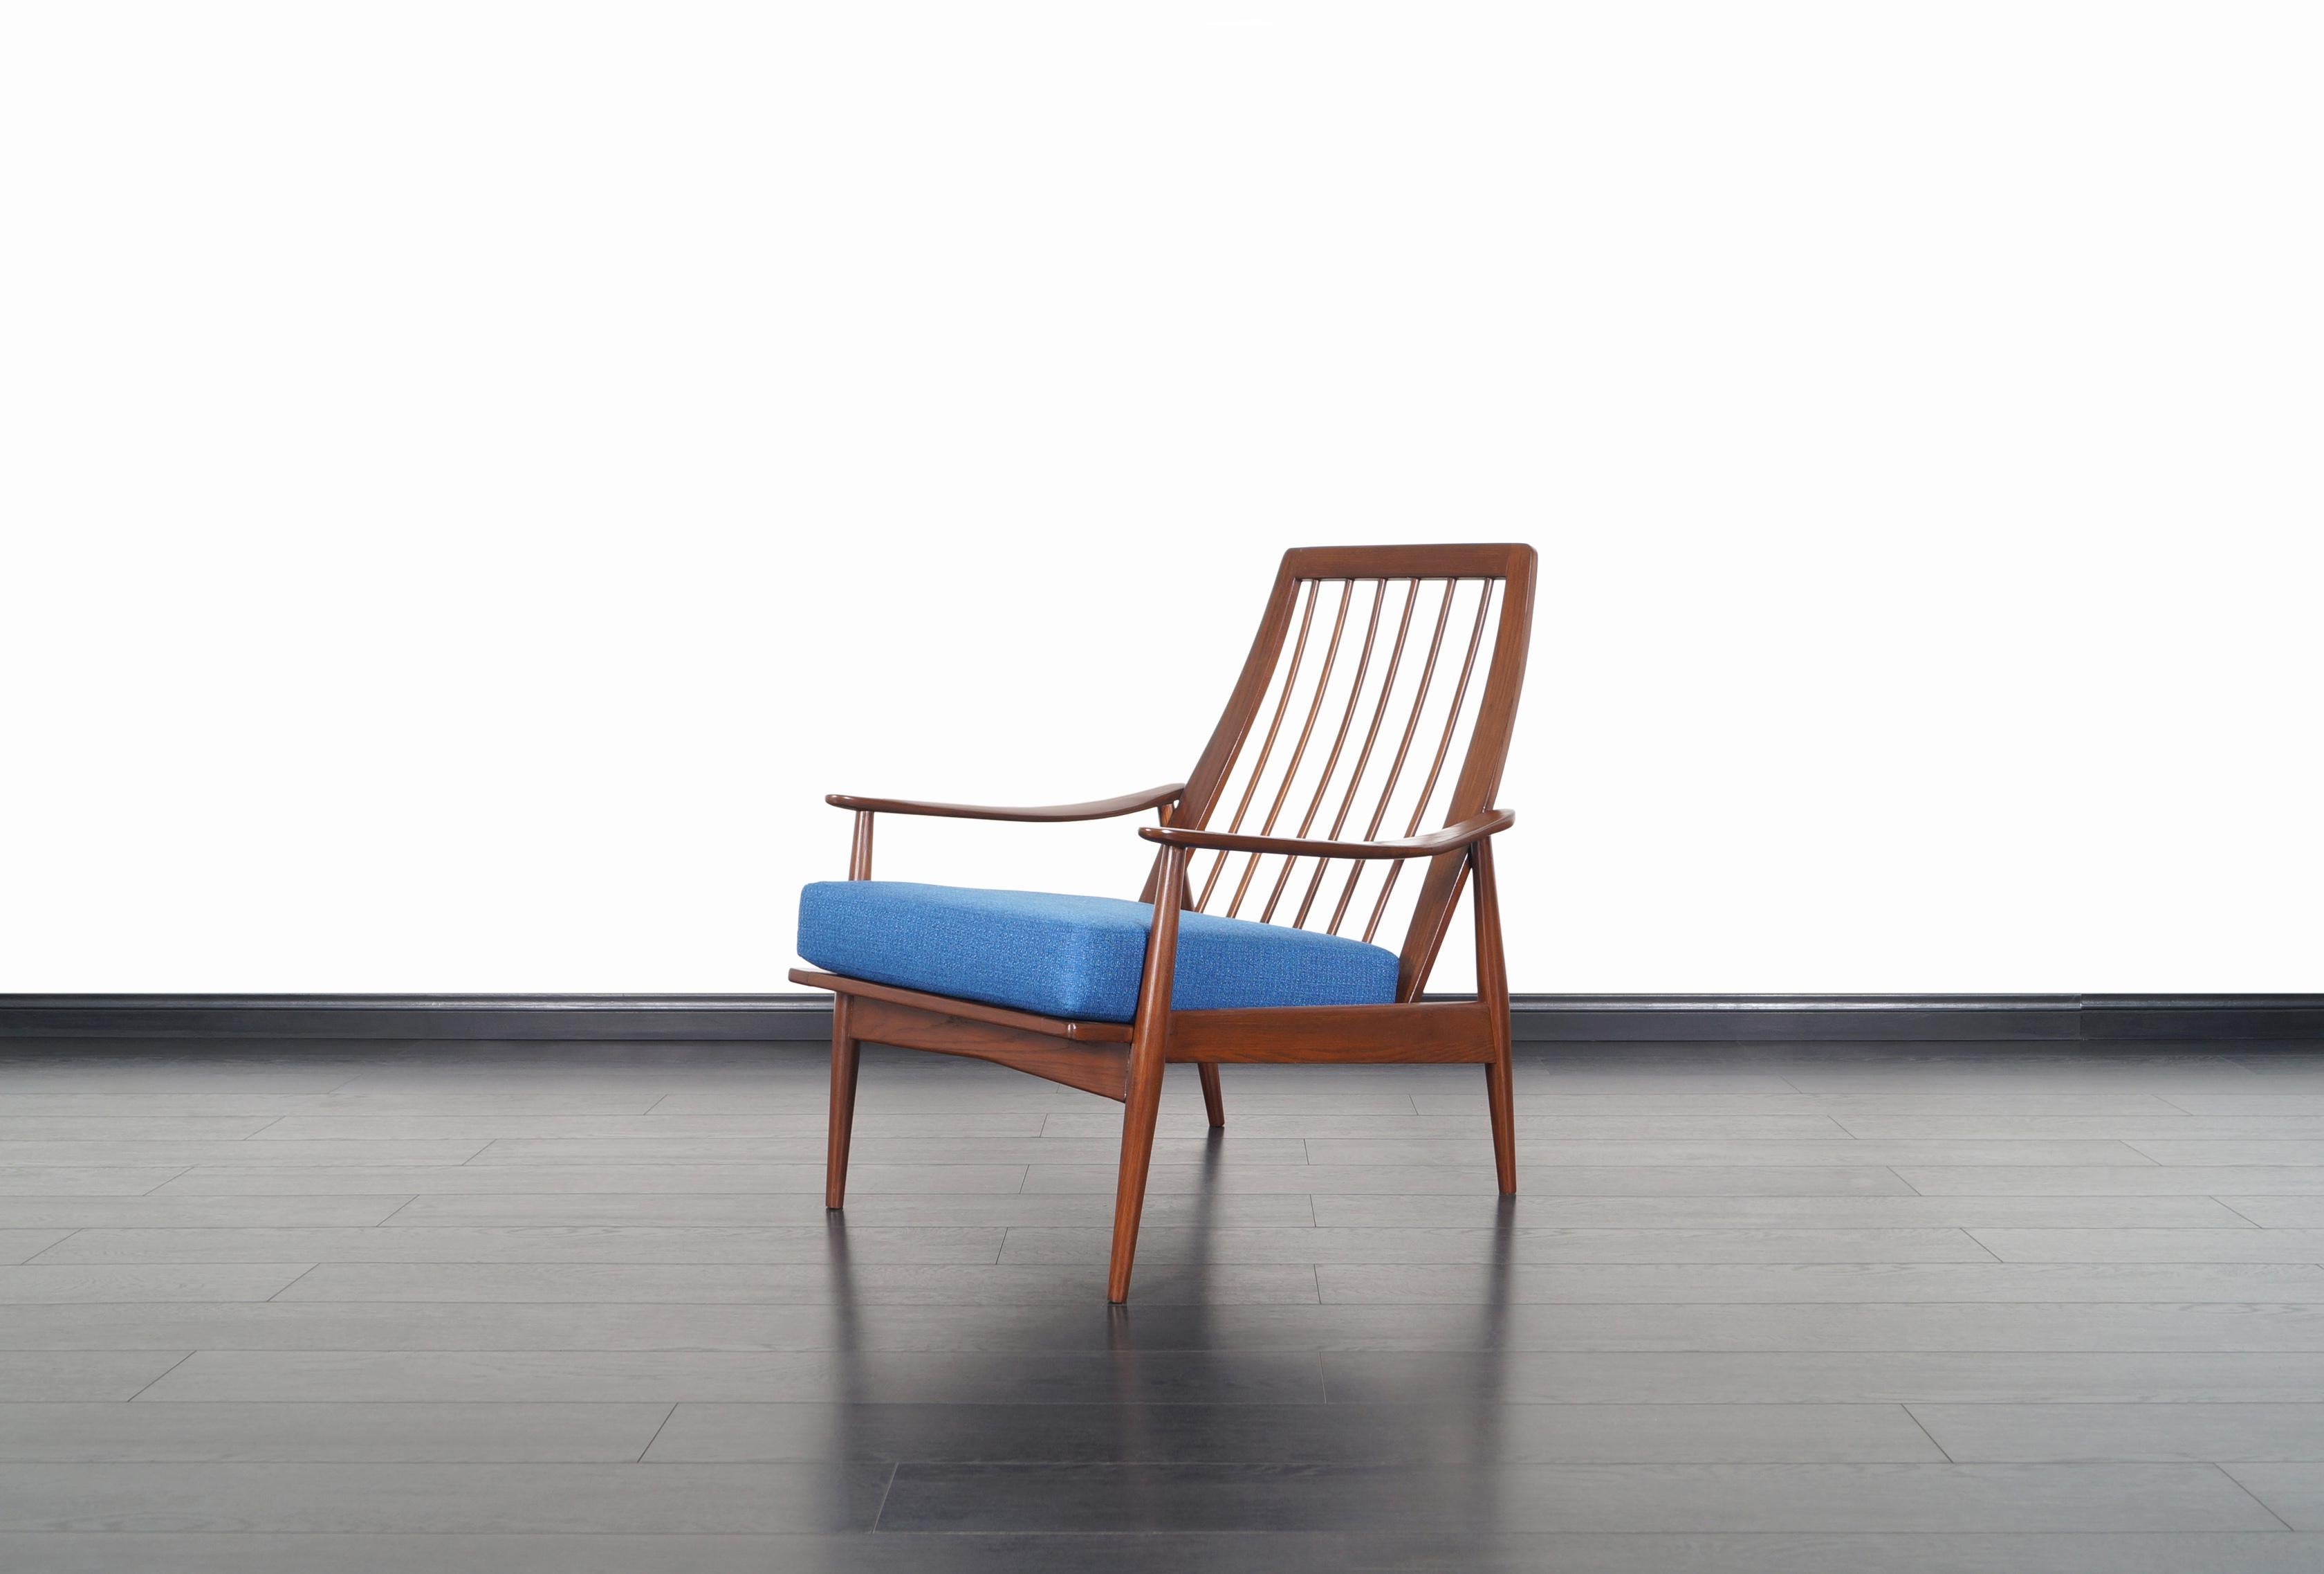 Fabelhafter Mid-Century Modern Lounge Chair, hergestellt in den Vereinigten Staaten, ca. 1950er Jahre. Dieser Stuhl besteht aus einem massiven, nussbaumgebeizten Eichengestell mit skulpturalen Armlehnen und einer Lattenrost-Rückenlehne. Die perfekt